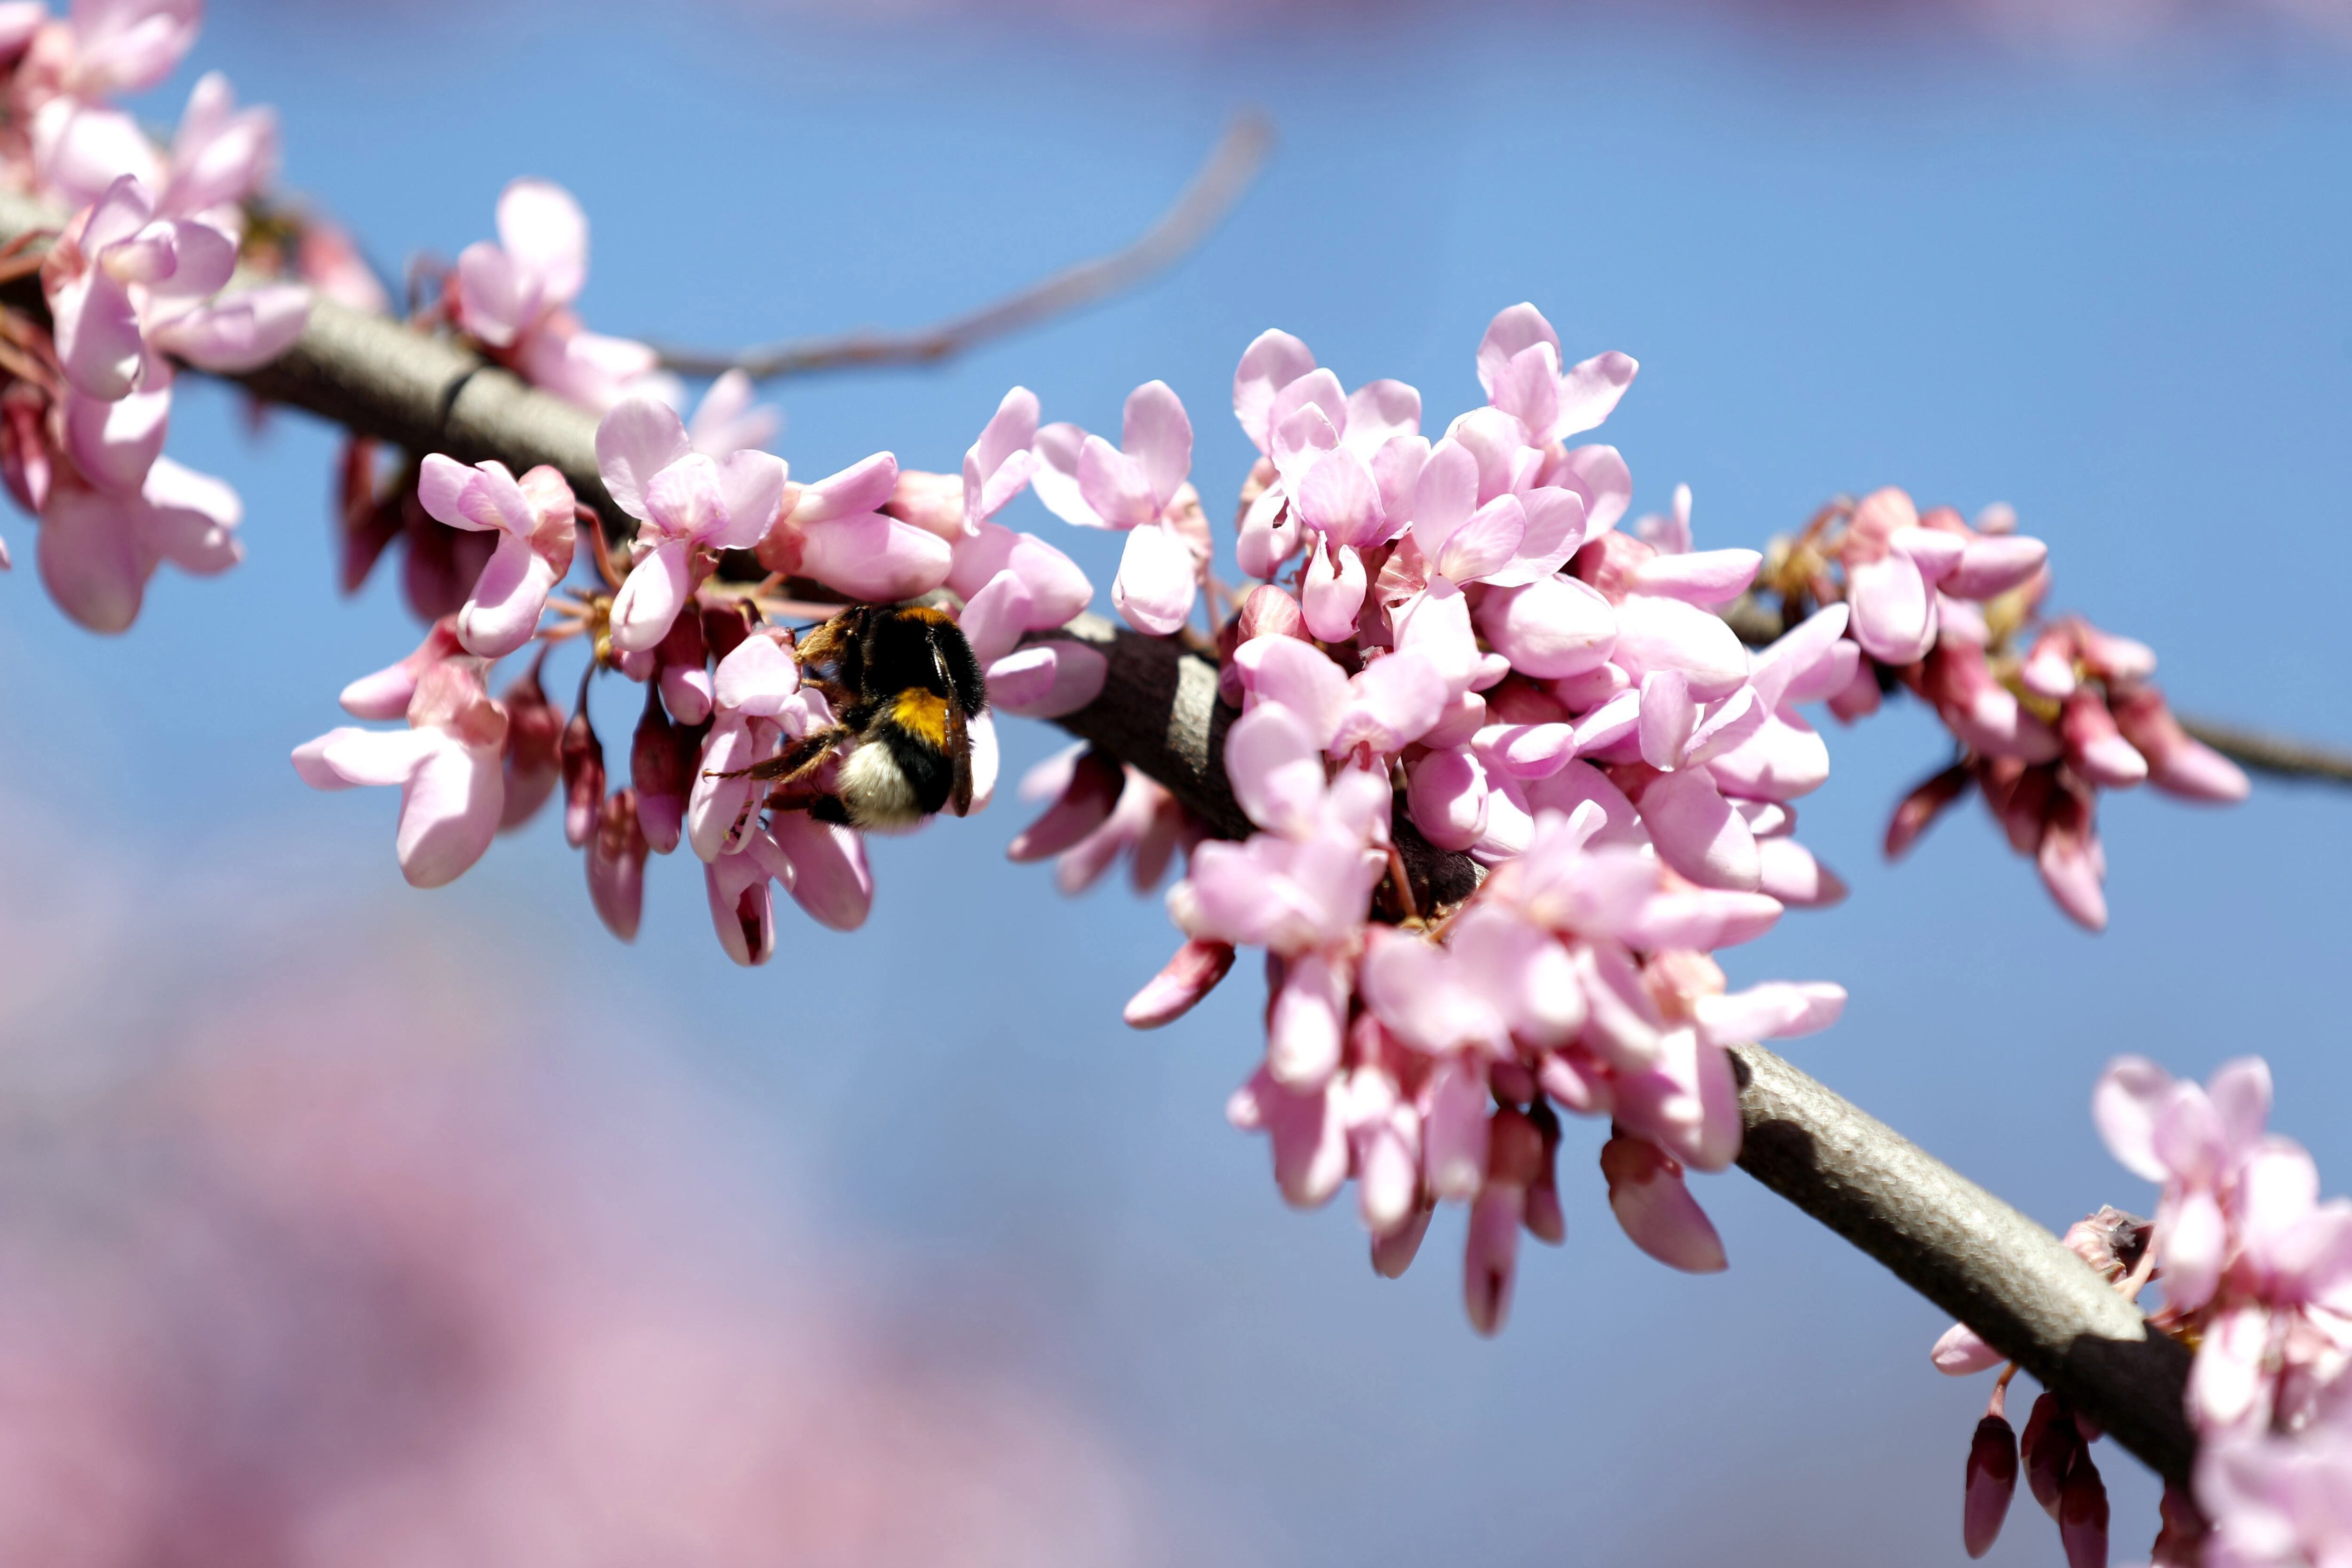 La extensión de la temporada de polen promueve la aparición de enfermedades más intensas como la rinitis alérgica